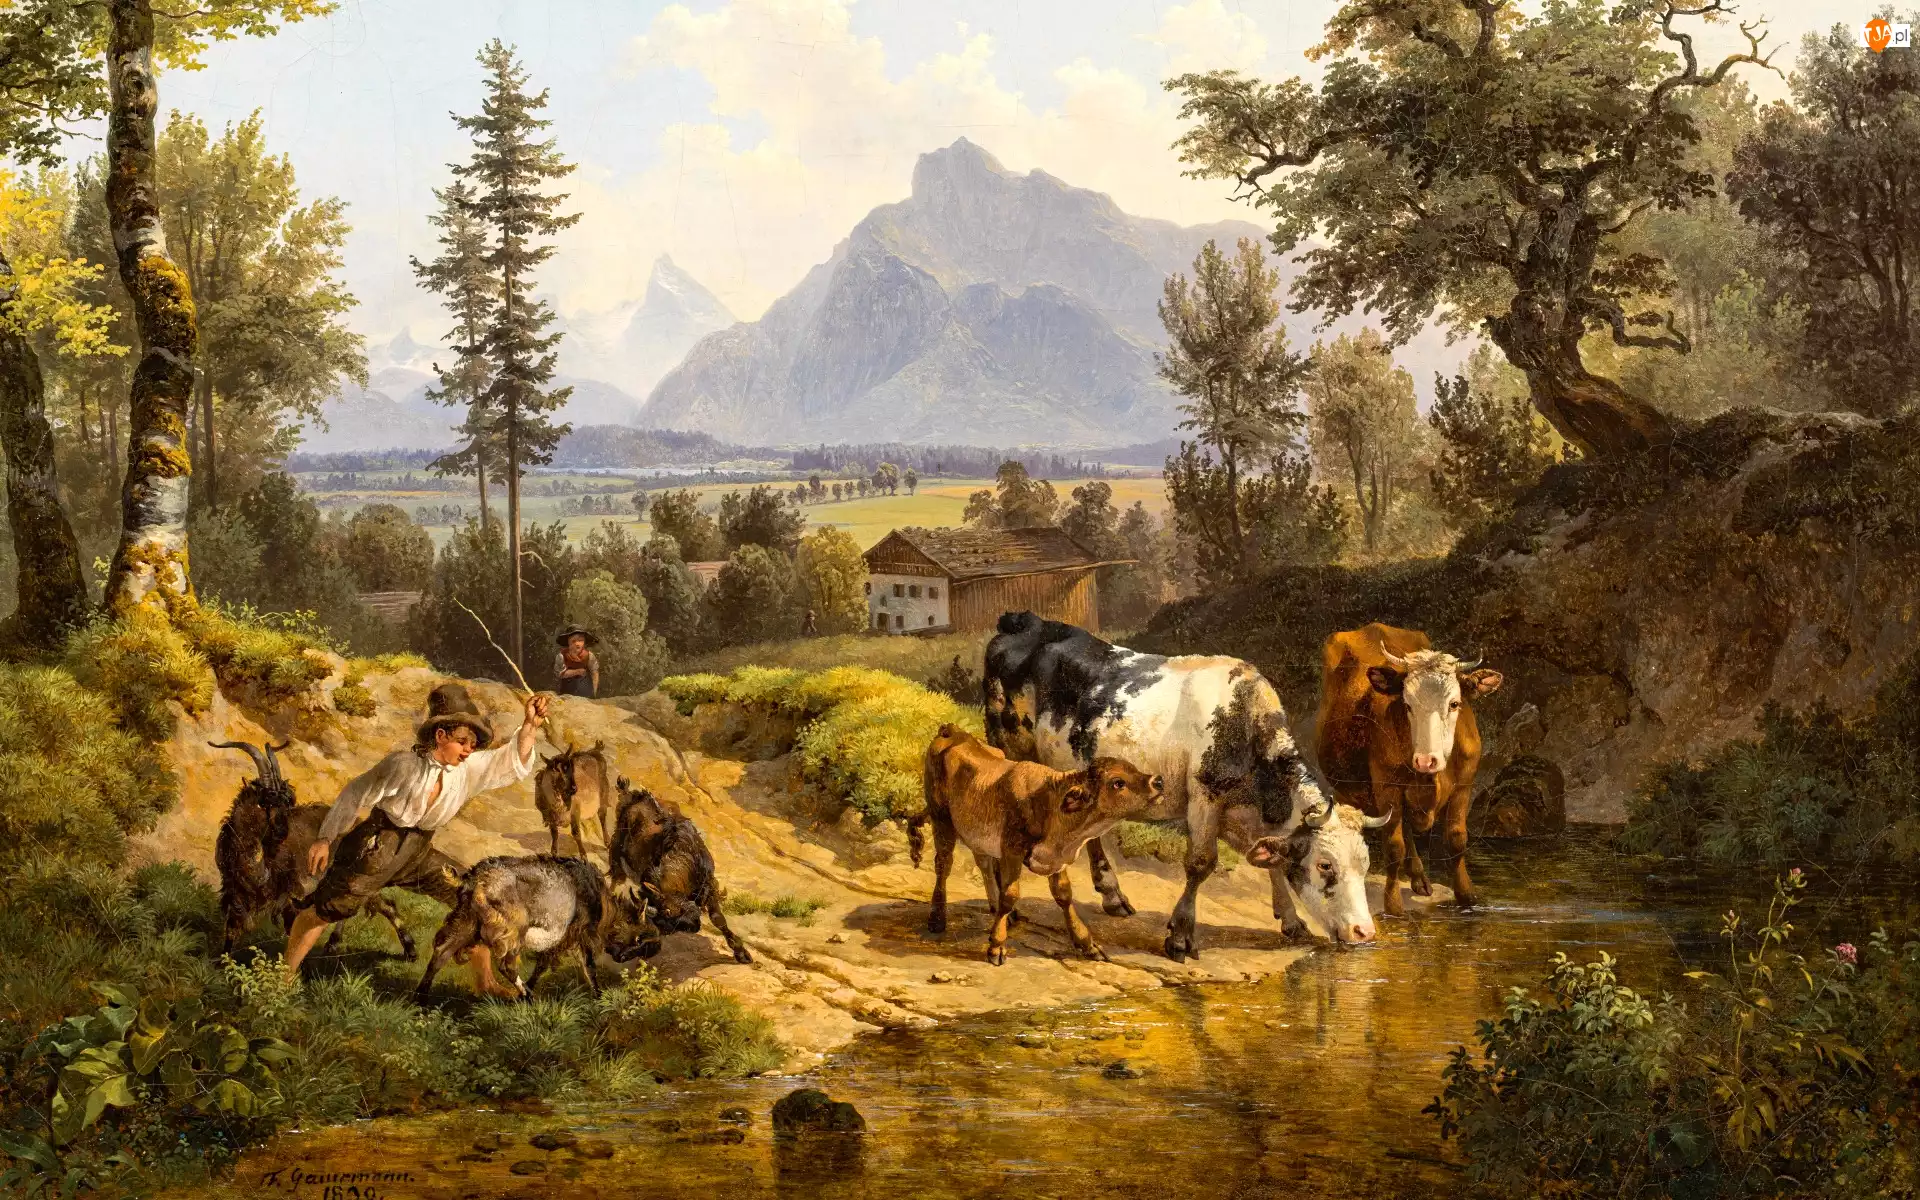 Wieś, Drzewa, Kozy, Dom, Friedrich Gauermann, Reprodukcja obrazu, Góry, Rzeka, Chłopiec, Krowy